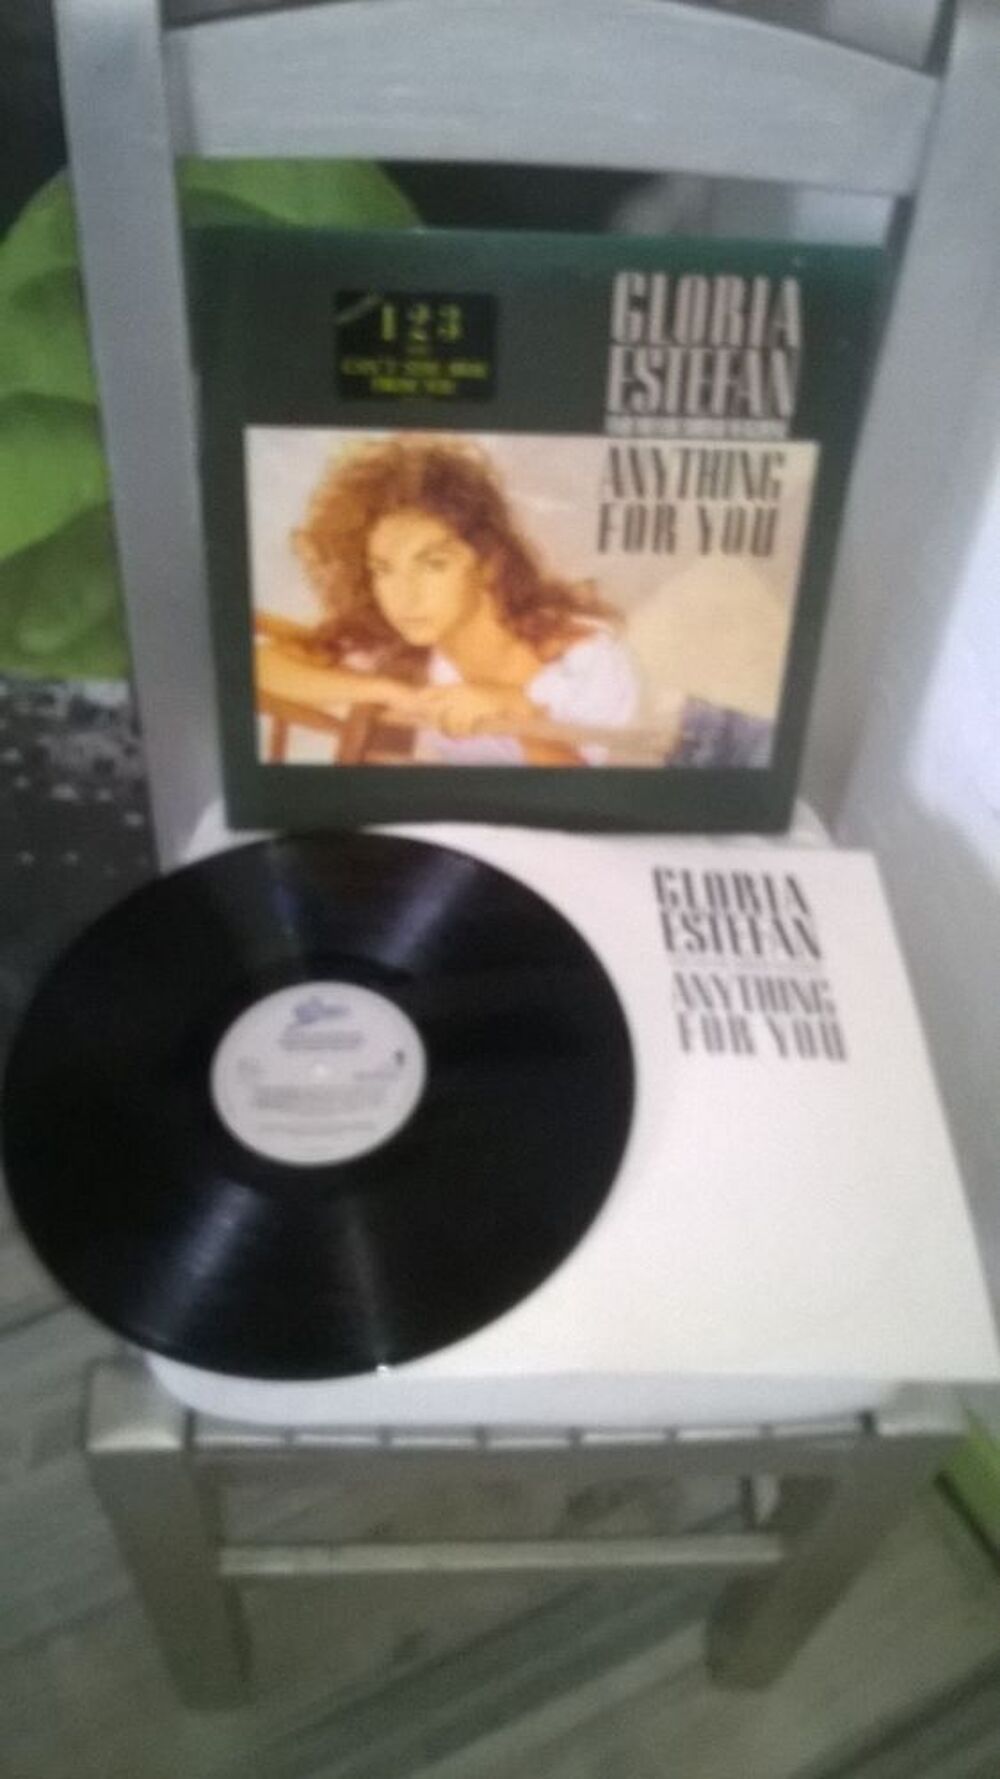 Vinyle Gloria Estefan 
Anything for you
1987
Excellent et CD et vinyles